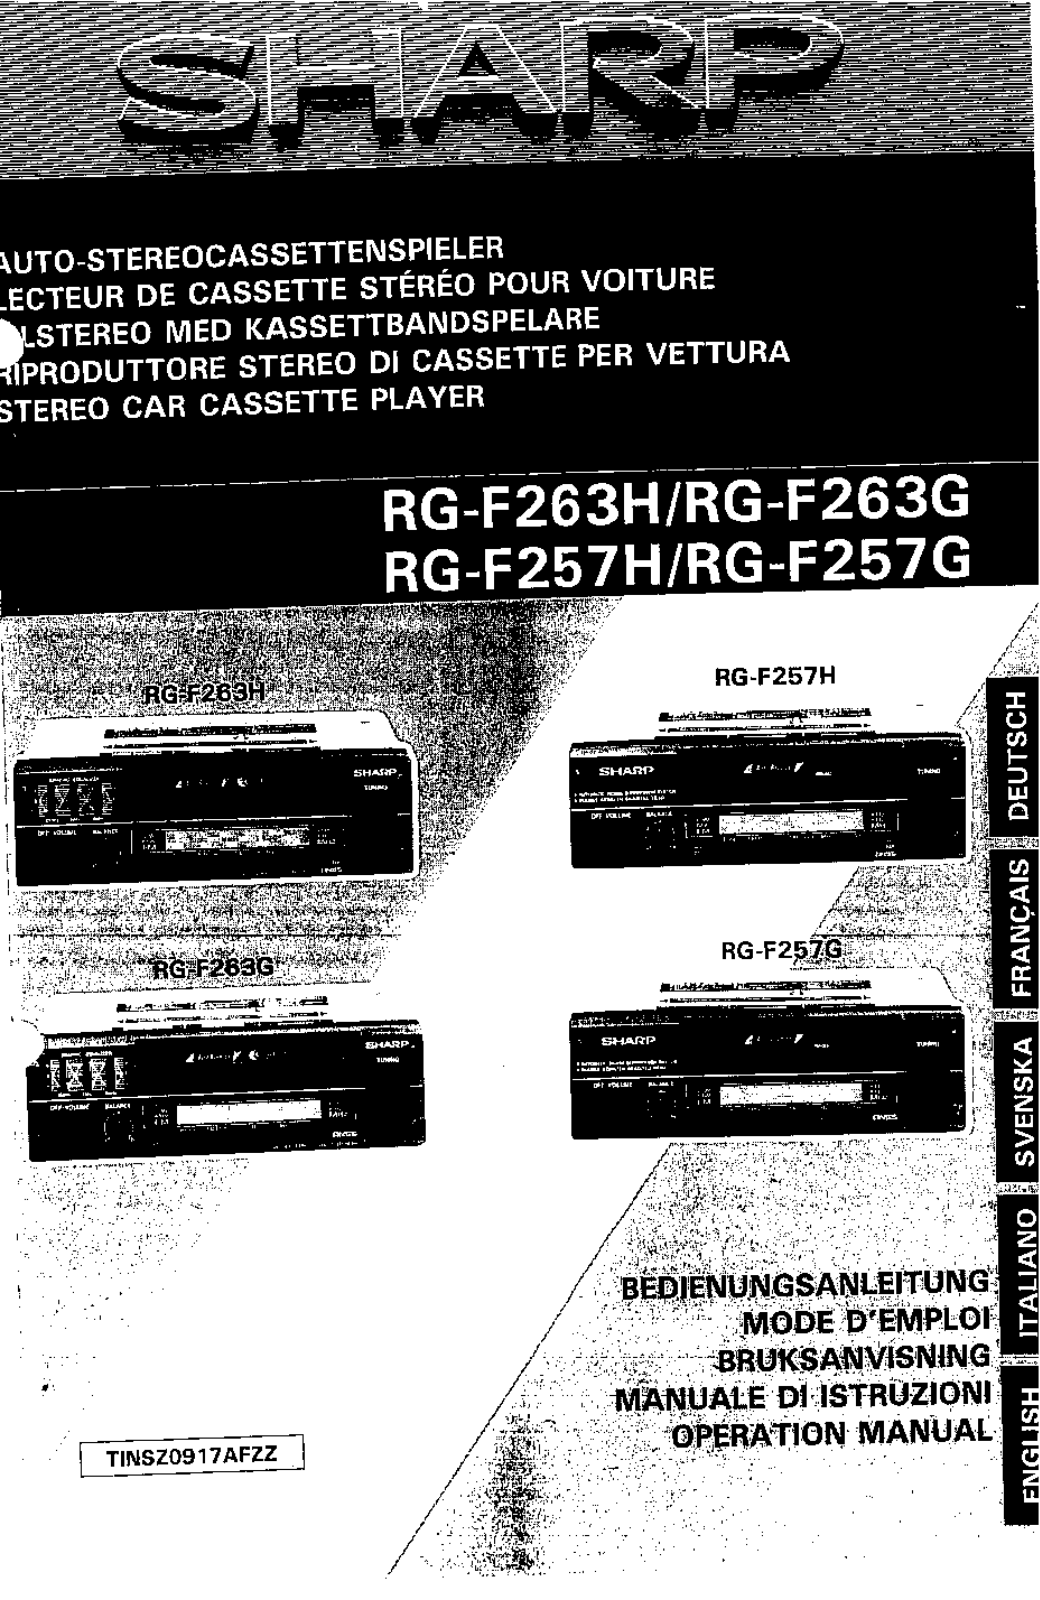 Sharp RG-F263H, RG-F257H, RG-F263G, RG-F257G Manual